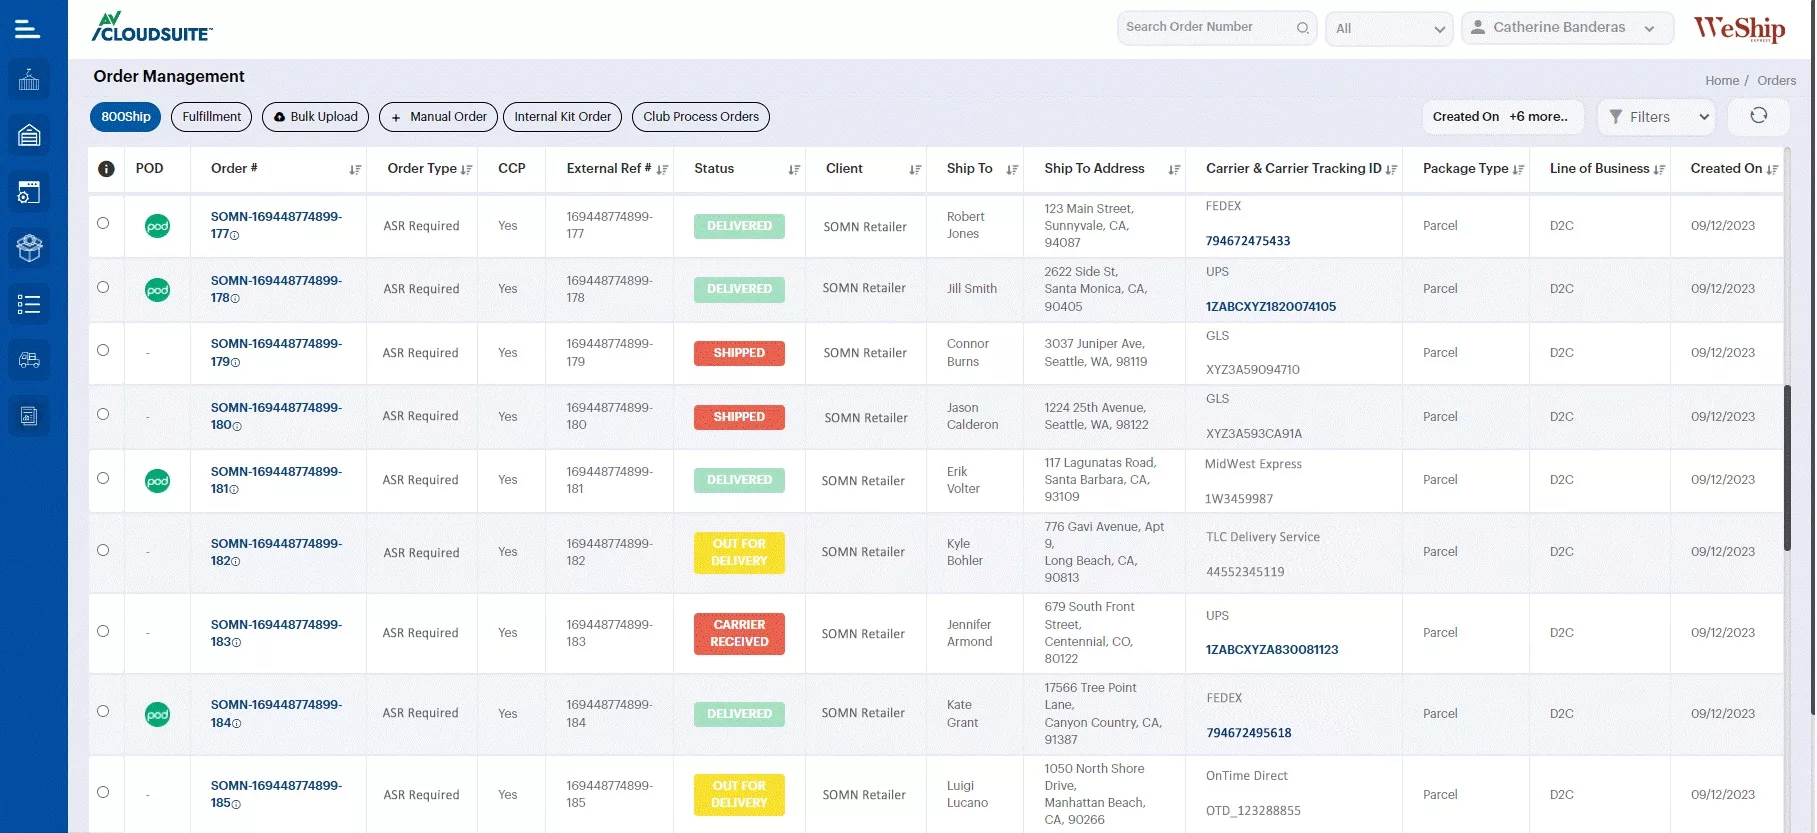 WeShip Dashboard displaying various order management data